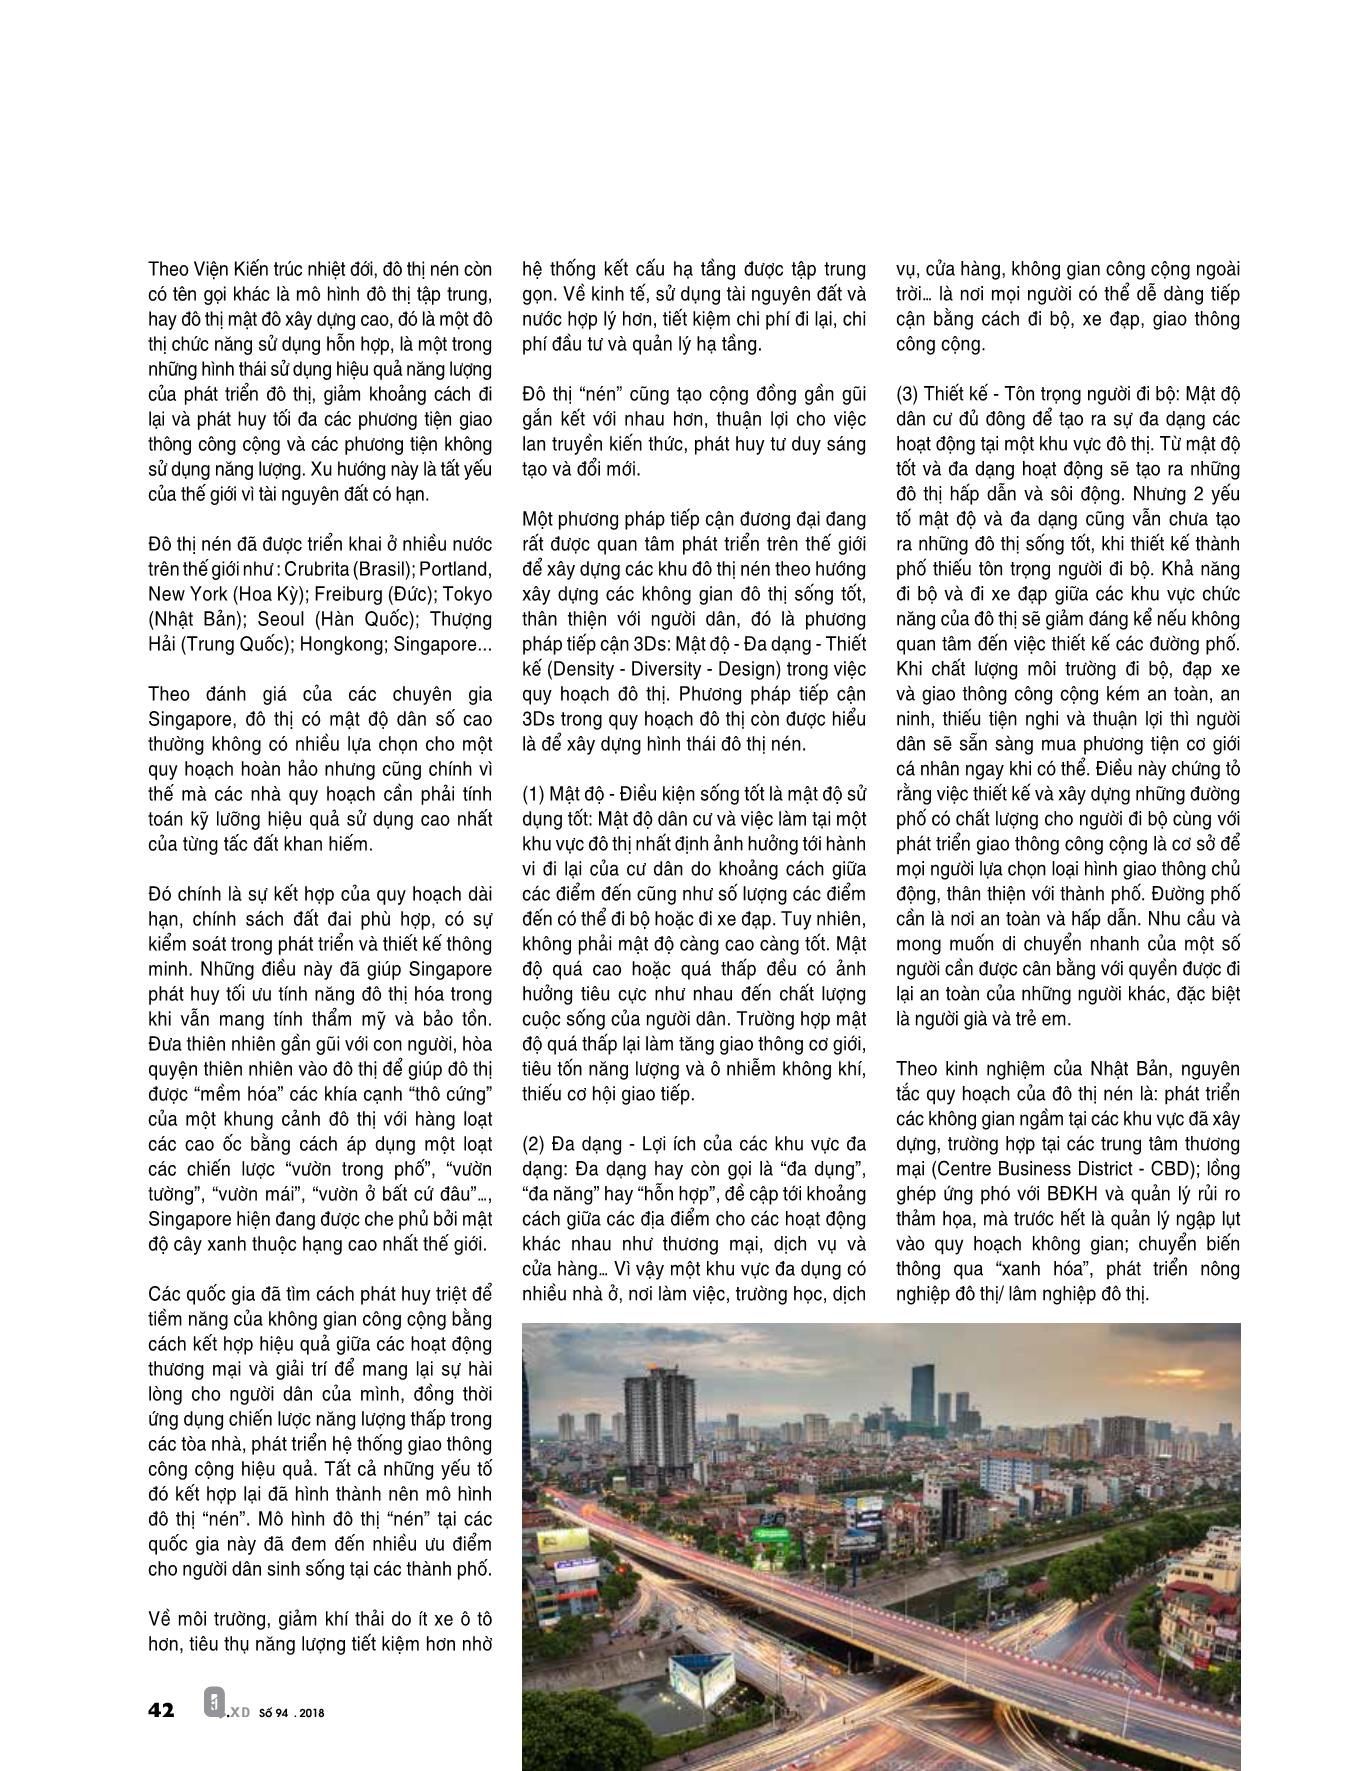 Thảo luận về phát triển đô thị “nén” ở Việt Nam trang 9